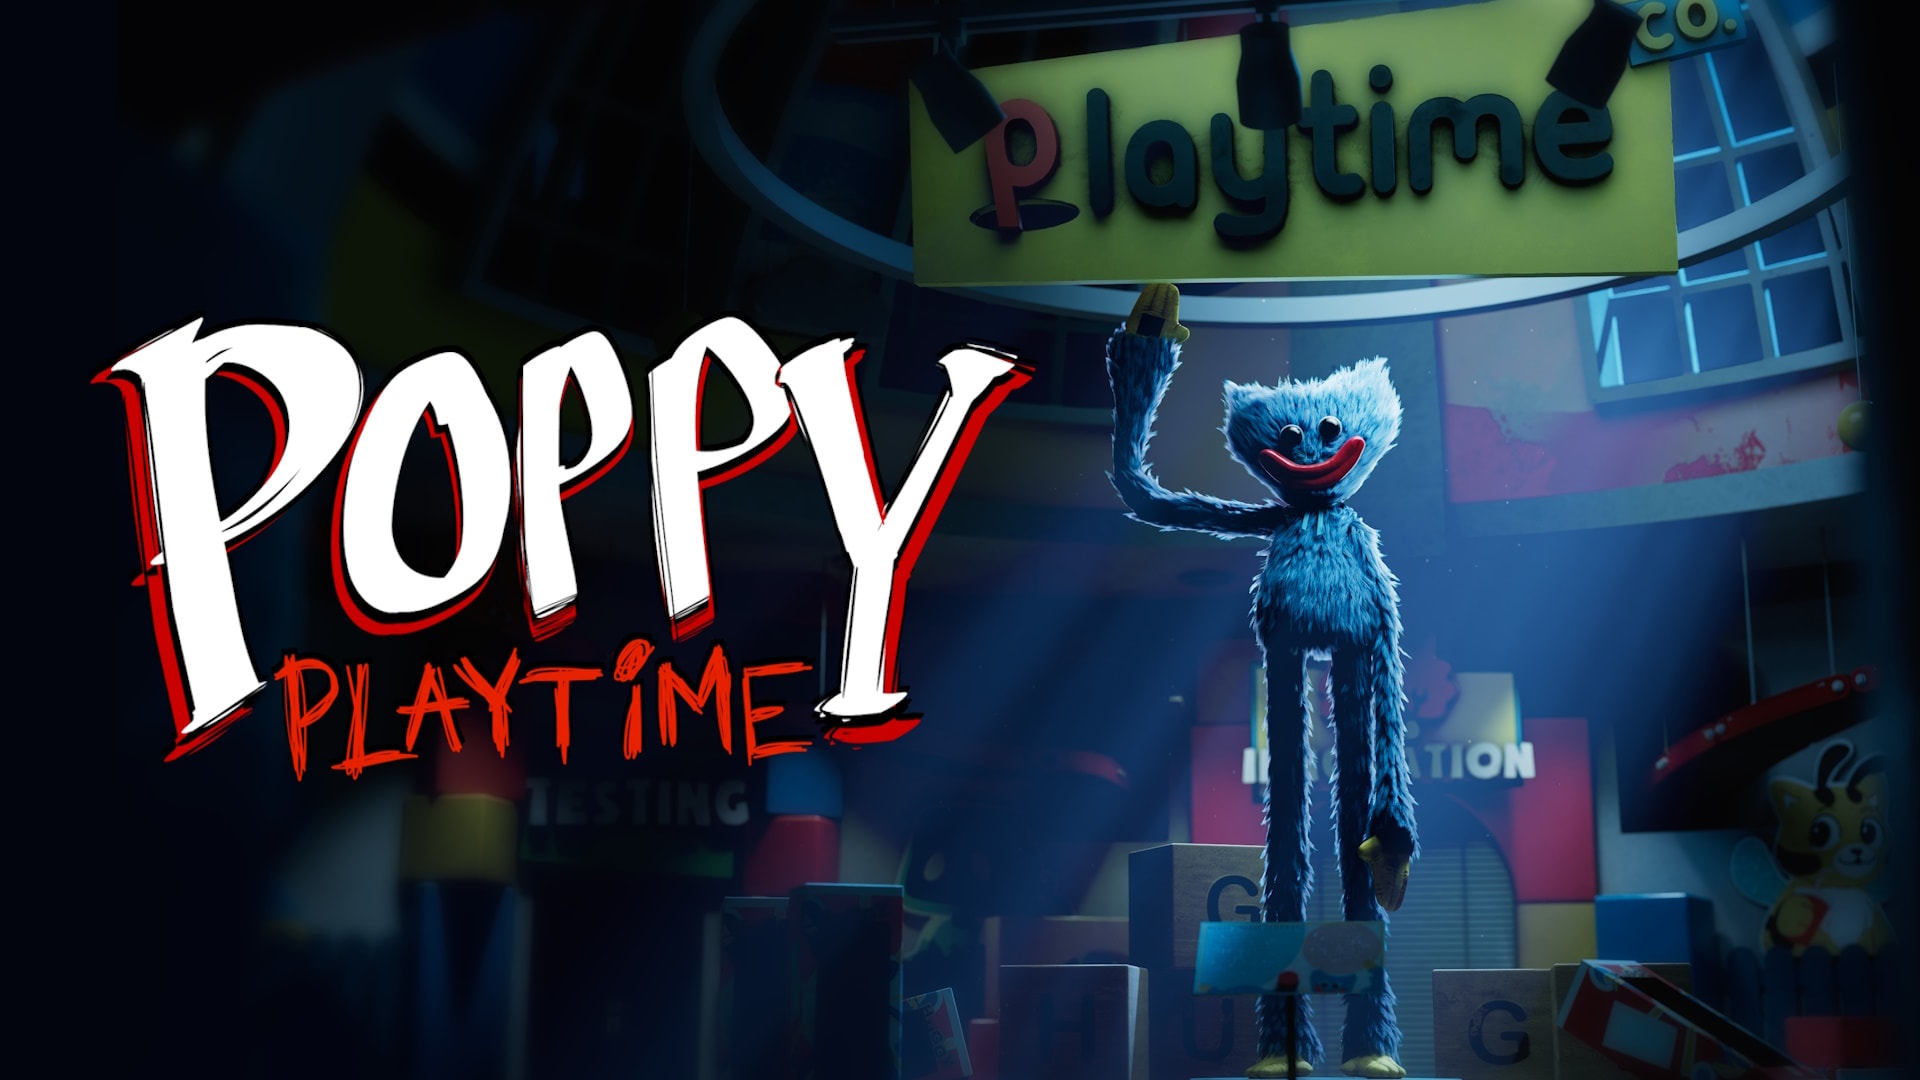 Poppy Playtime: Chapter 1